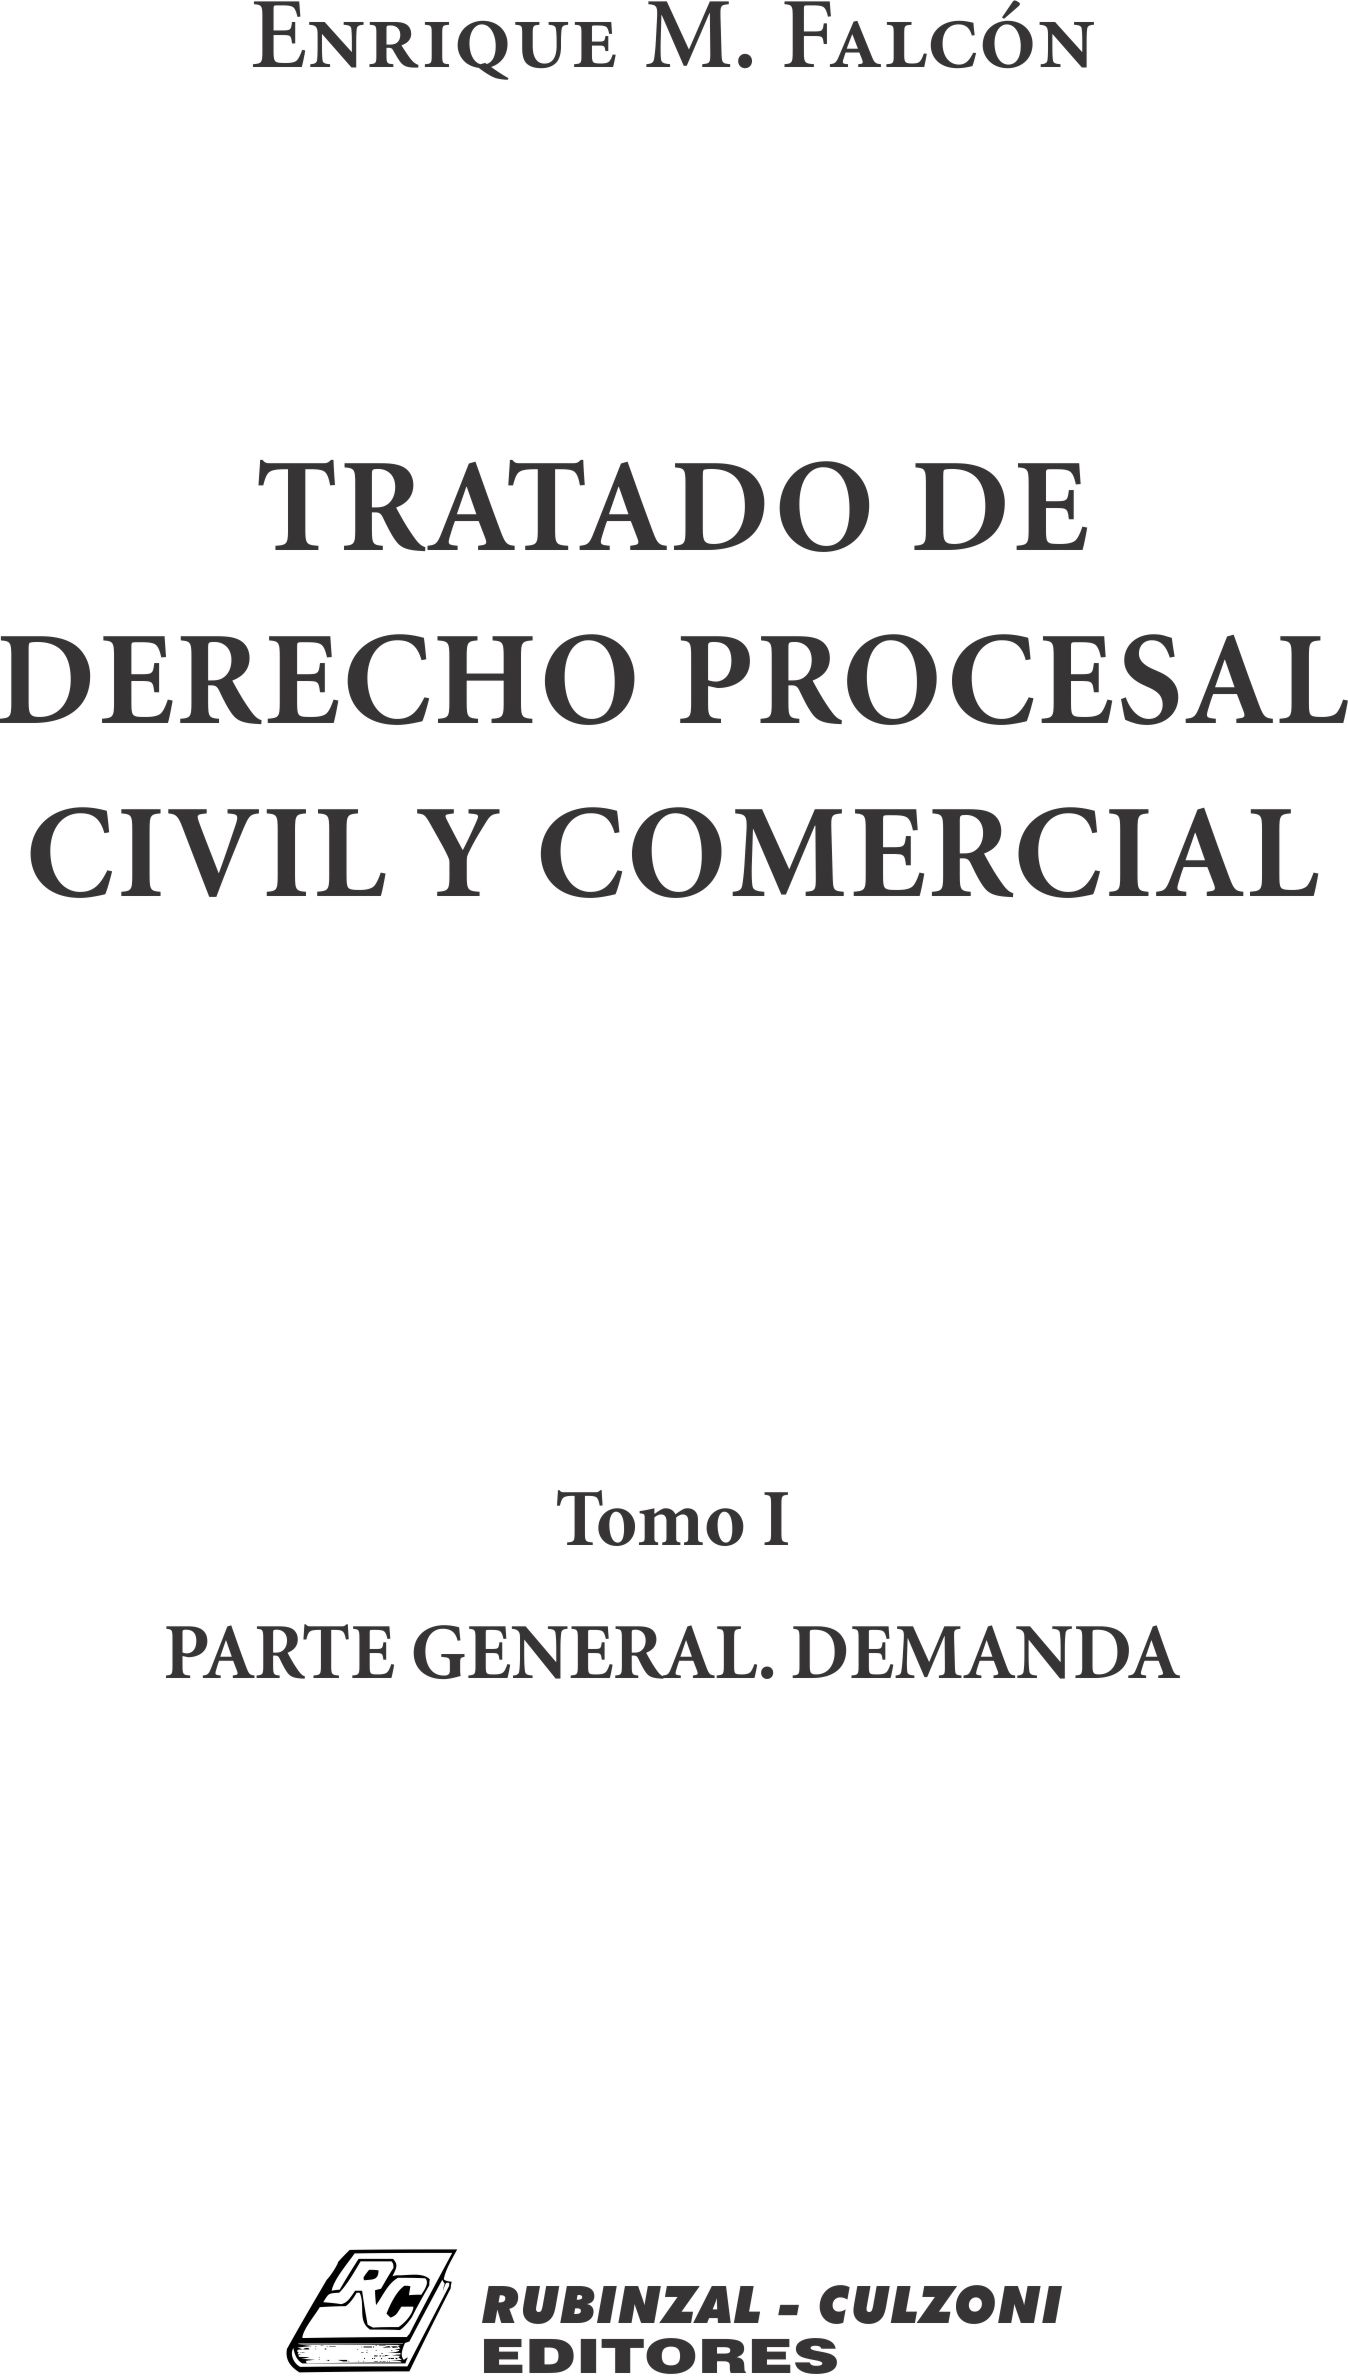 Tratado de Derecho Procesal Civil y Comercial. - Tomo I. Parte General. Demanda